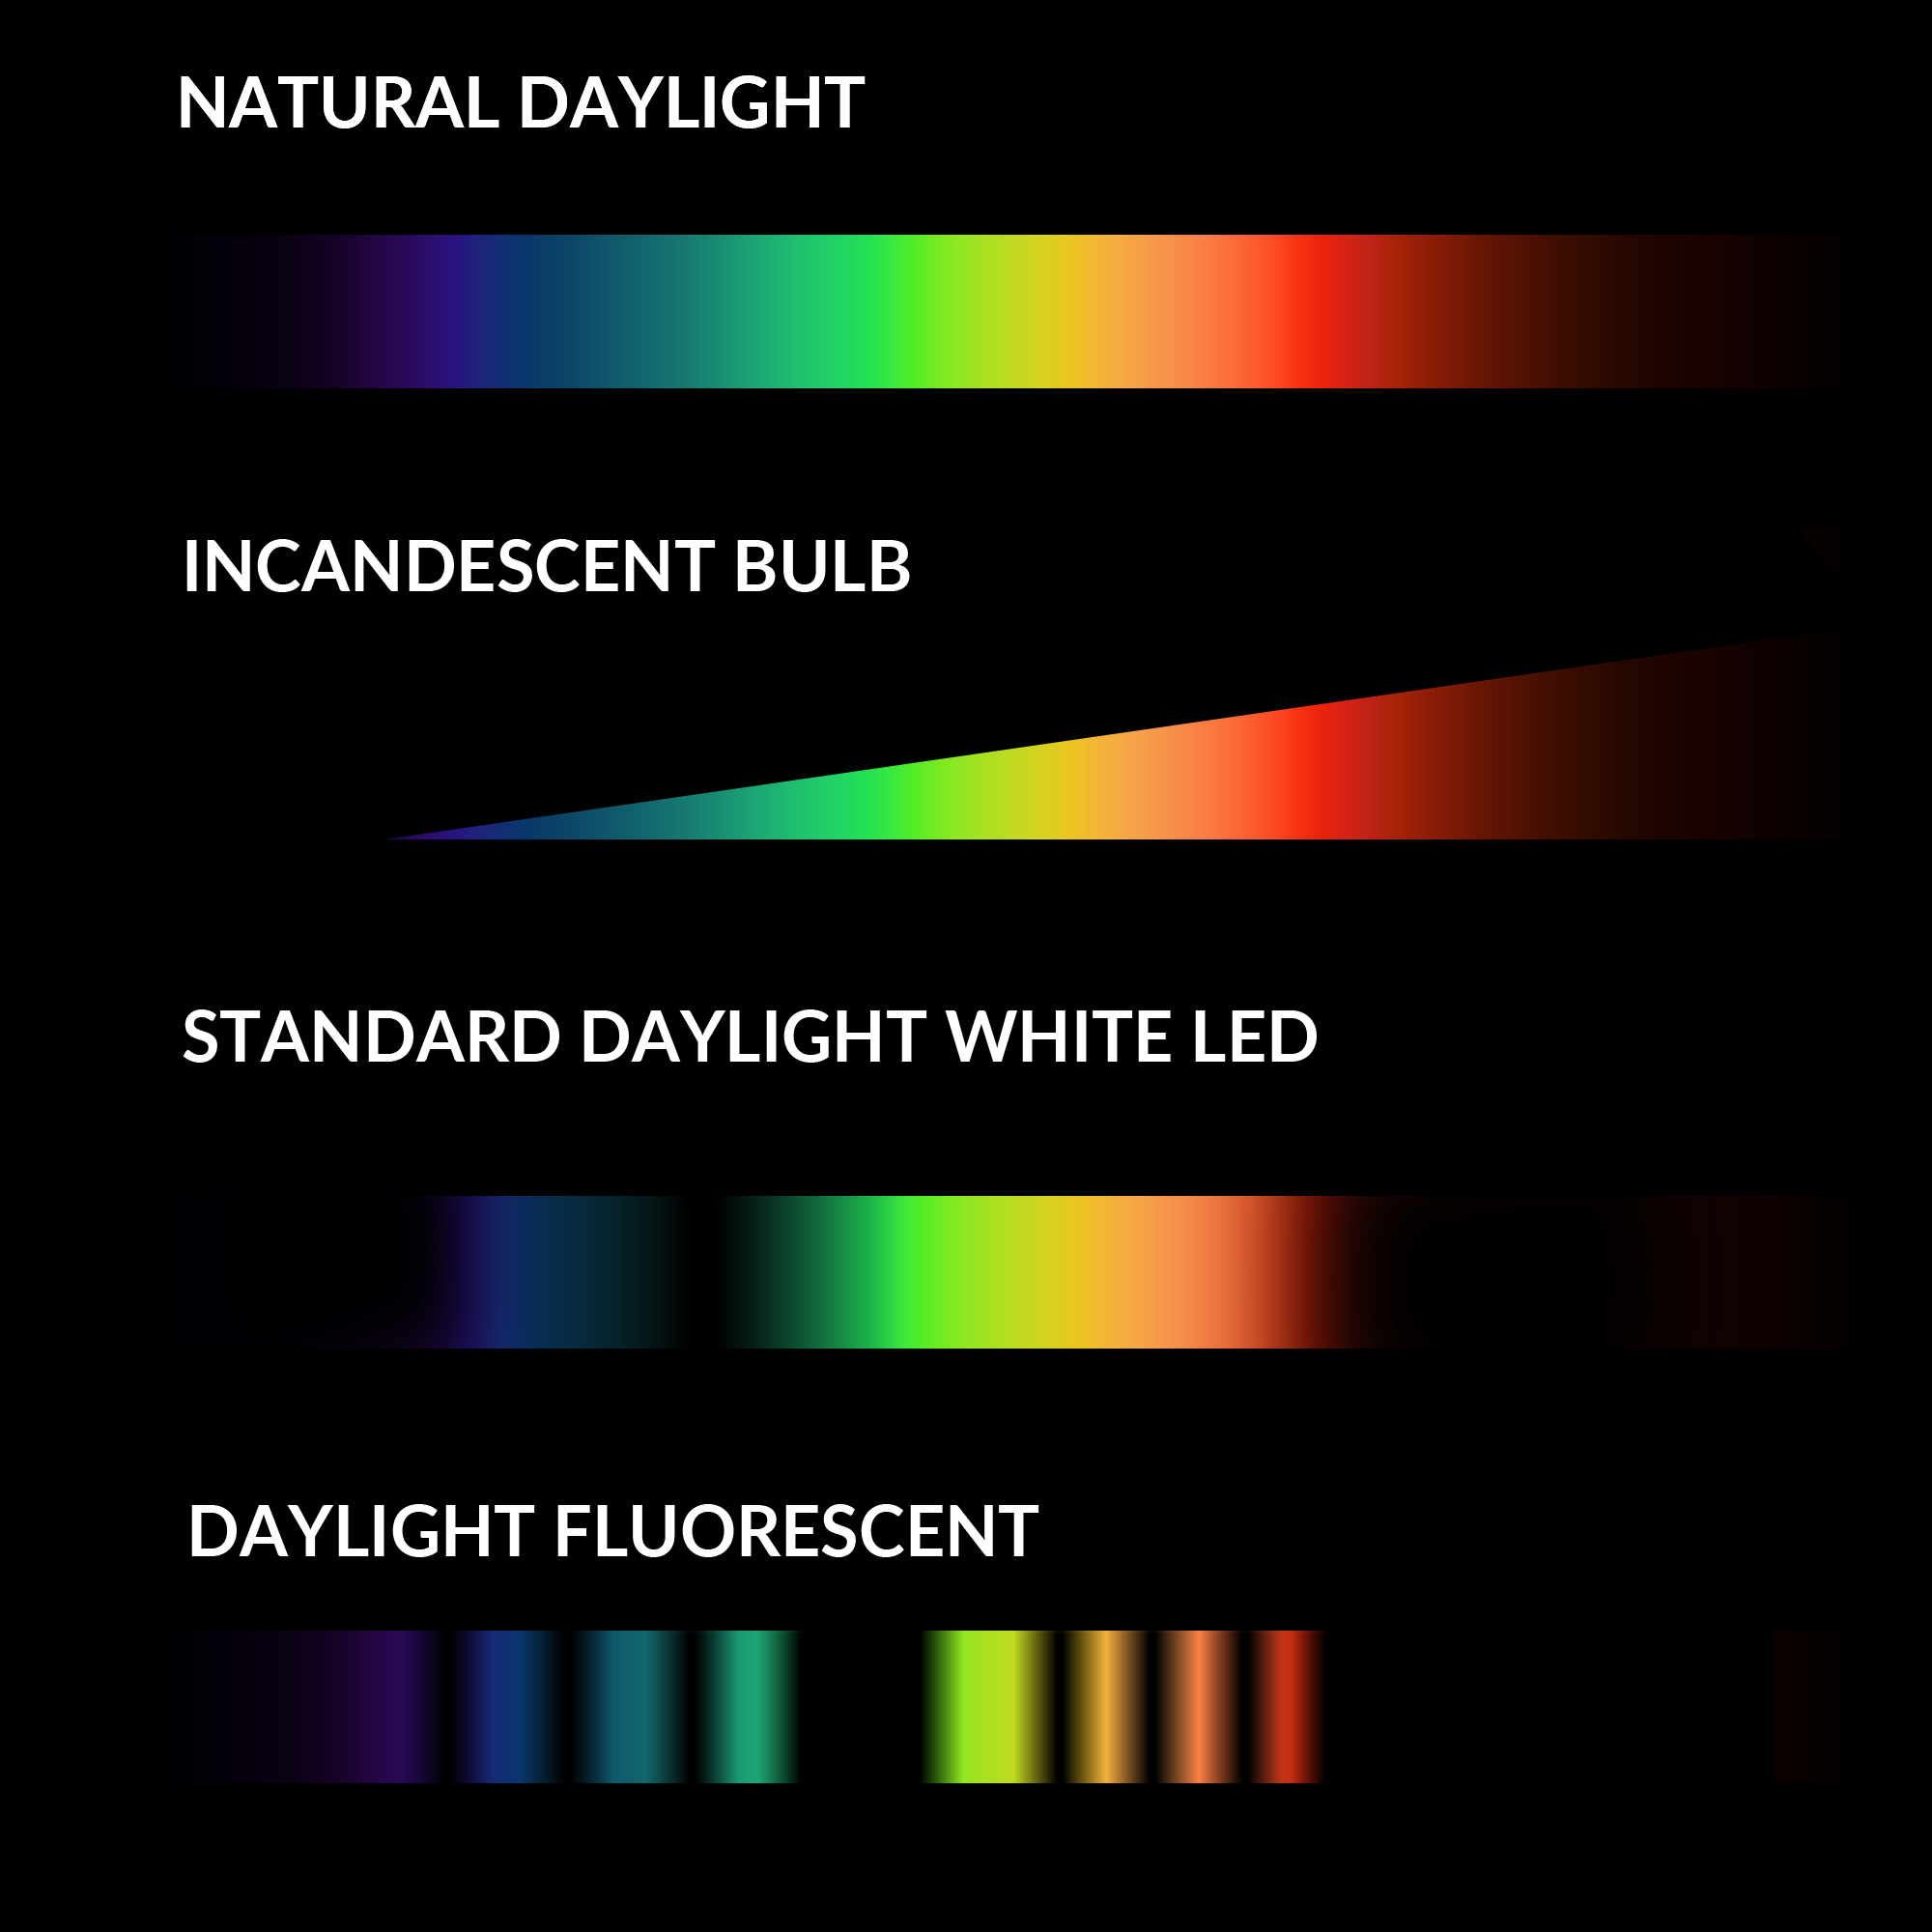 Full Spectrum LED Lighting